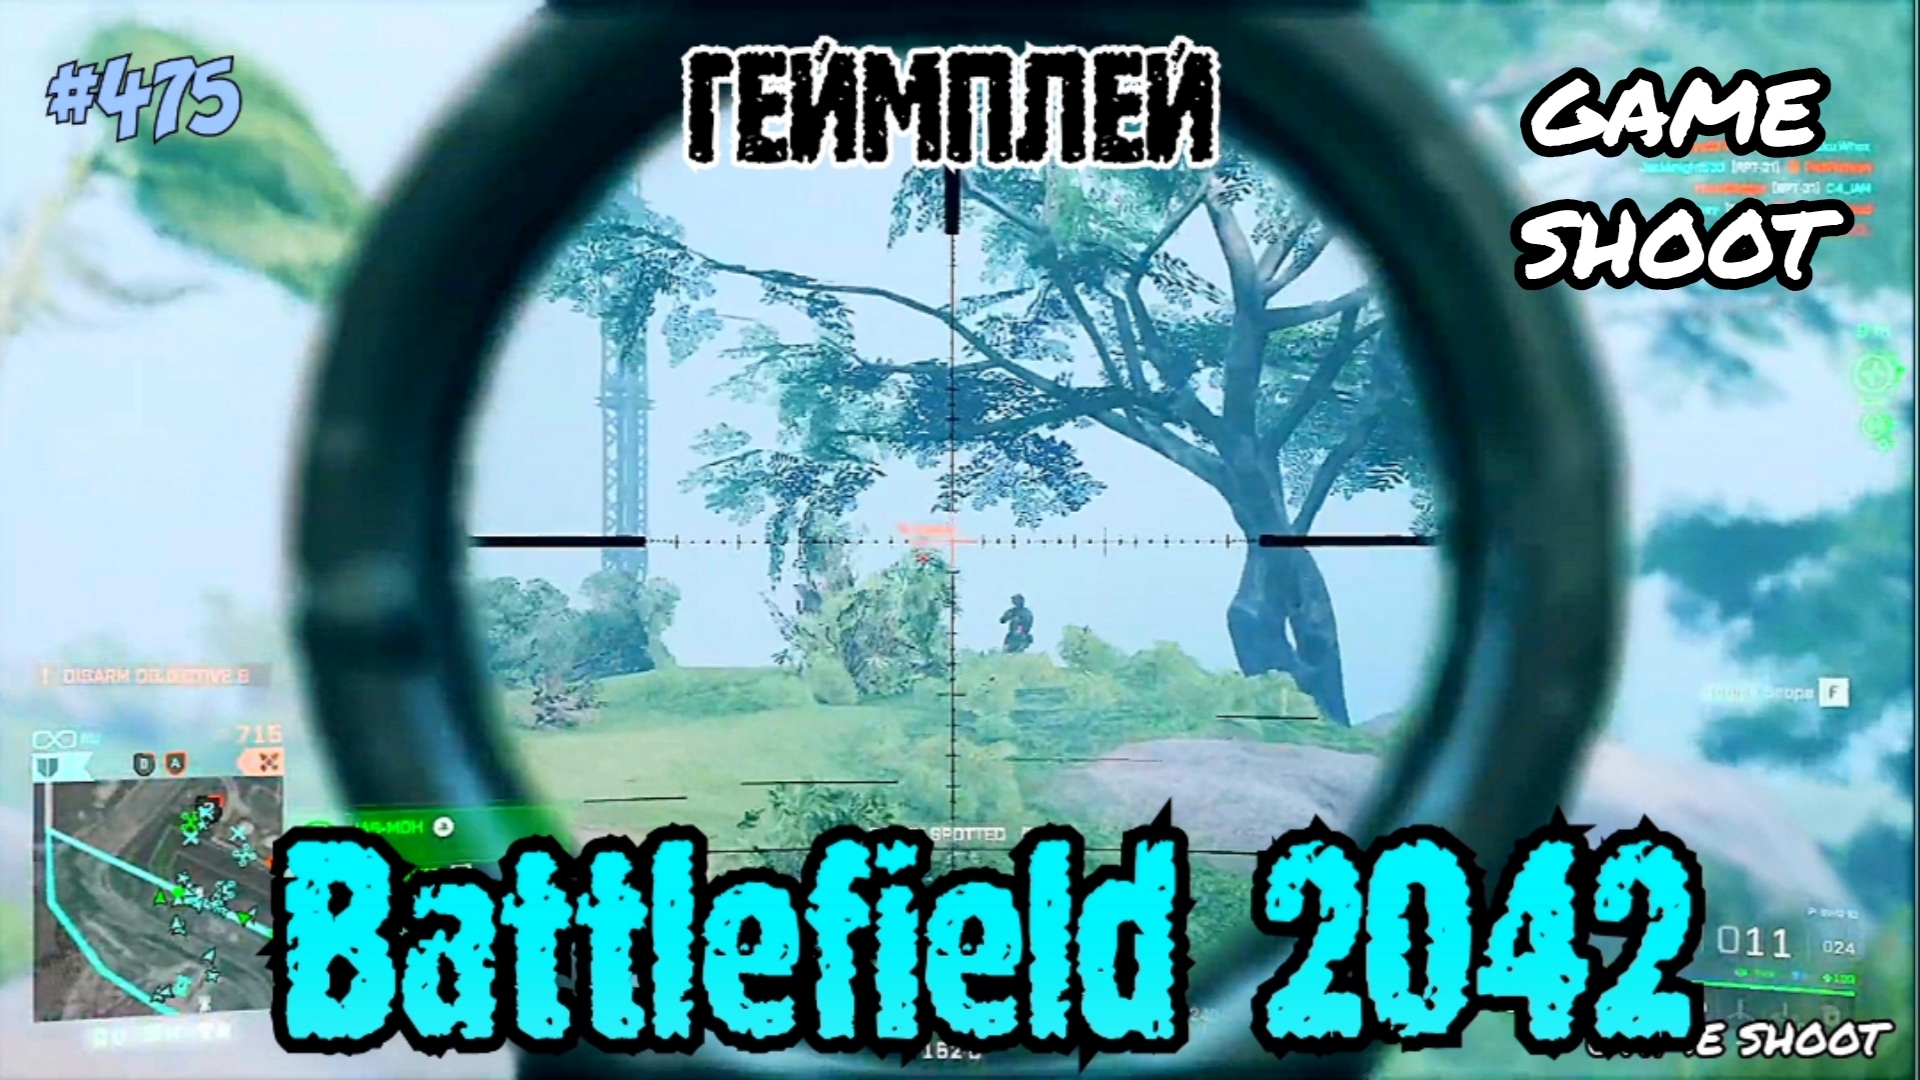 Battlefield 2042 •геймплей• #475 Game Shoot